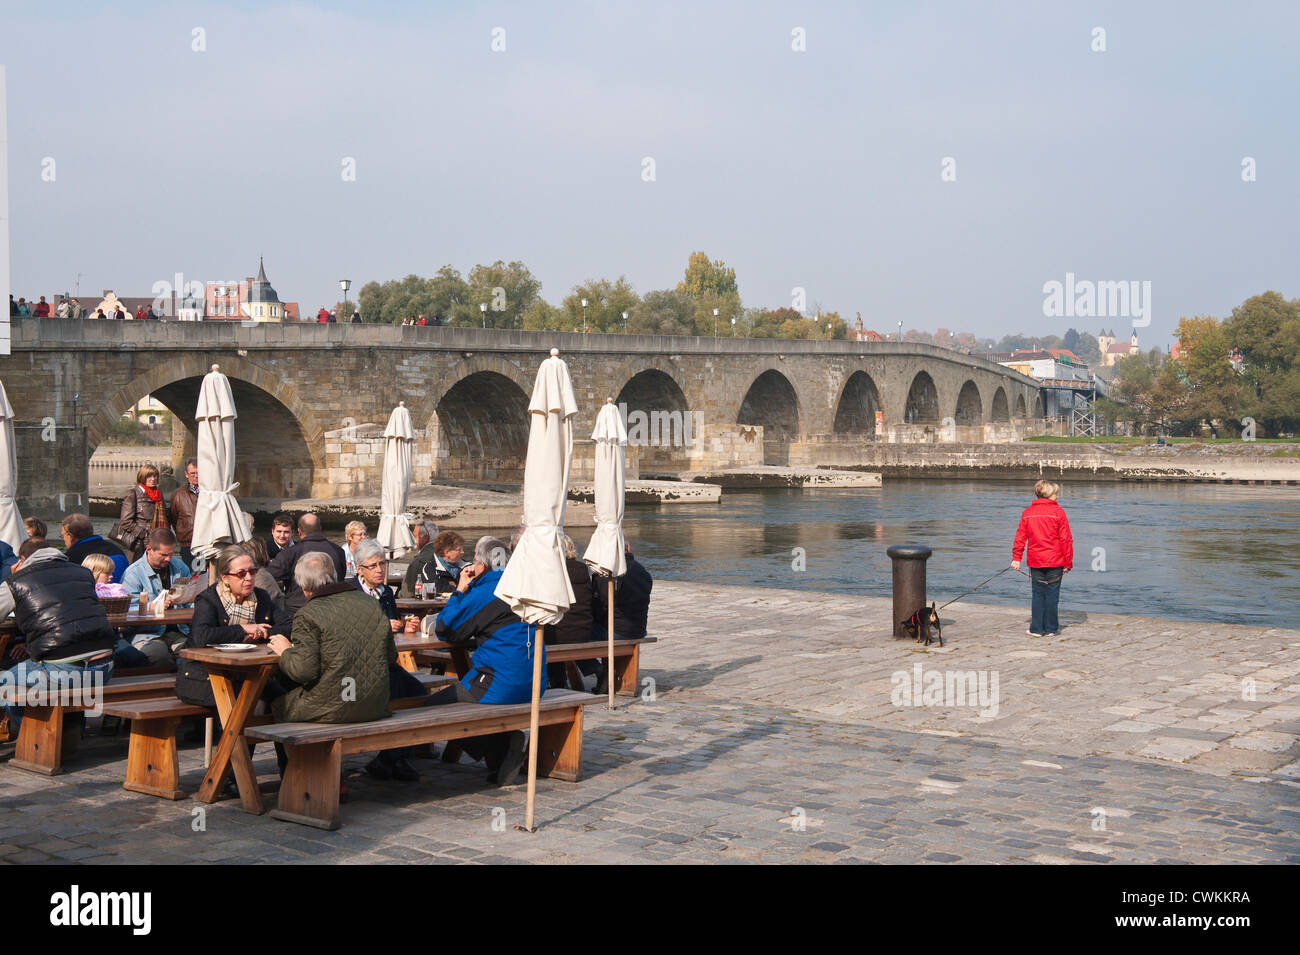 Romano histórico Steinerne Brucke (Puente) sobre el Danubio y el histórico restaurante cocina salchichas Regensburg, Alemania. Foto de stock